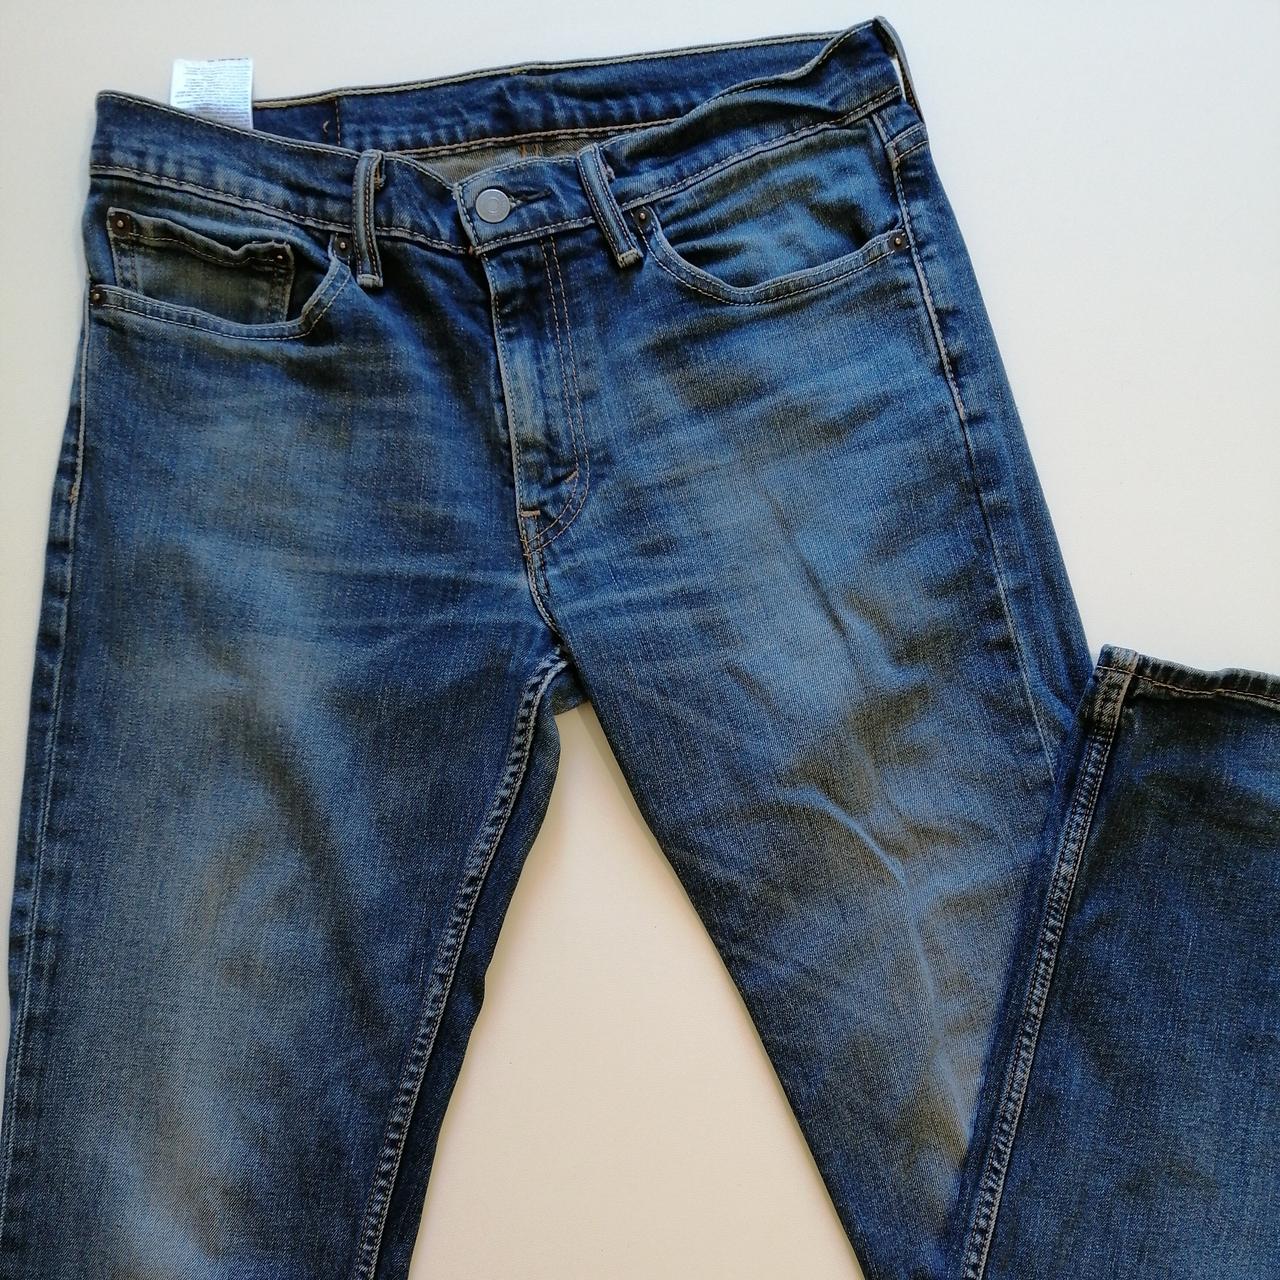 Levis jeans 32/34 slim fit - Depop